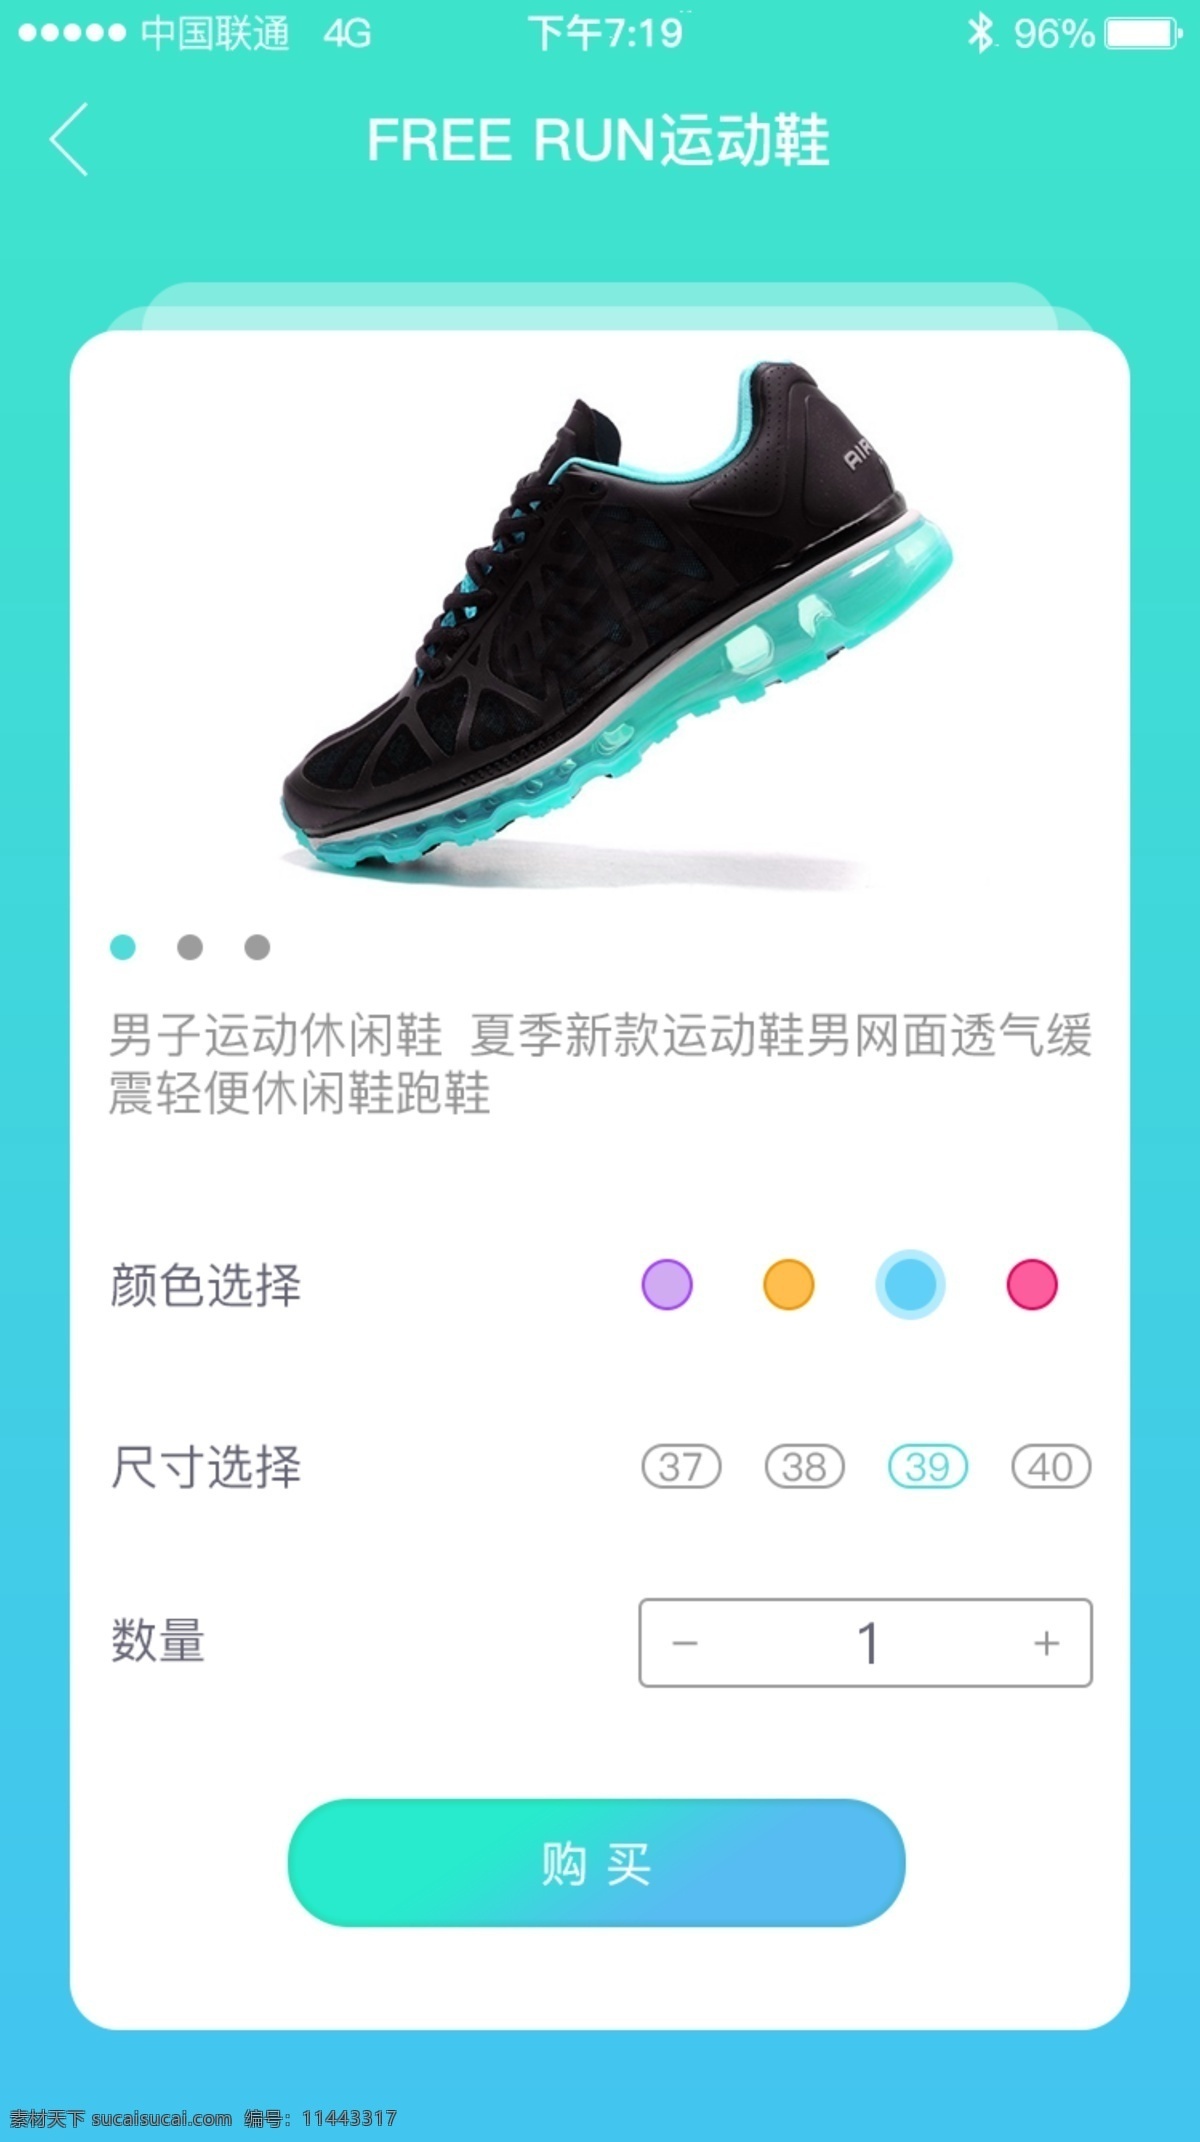 超酷 跑步 运动鞋 app 炫 酷 彩色渐变色 炫彩app 购物app app界面